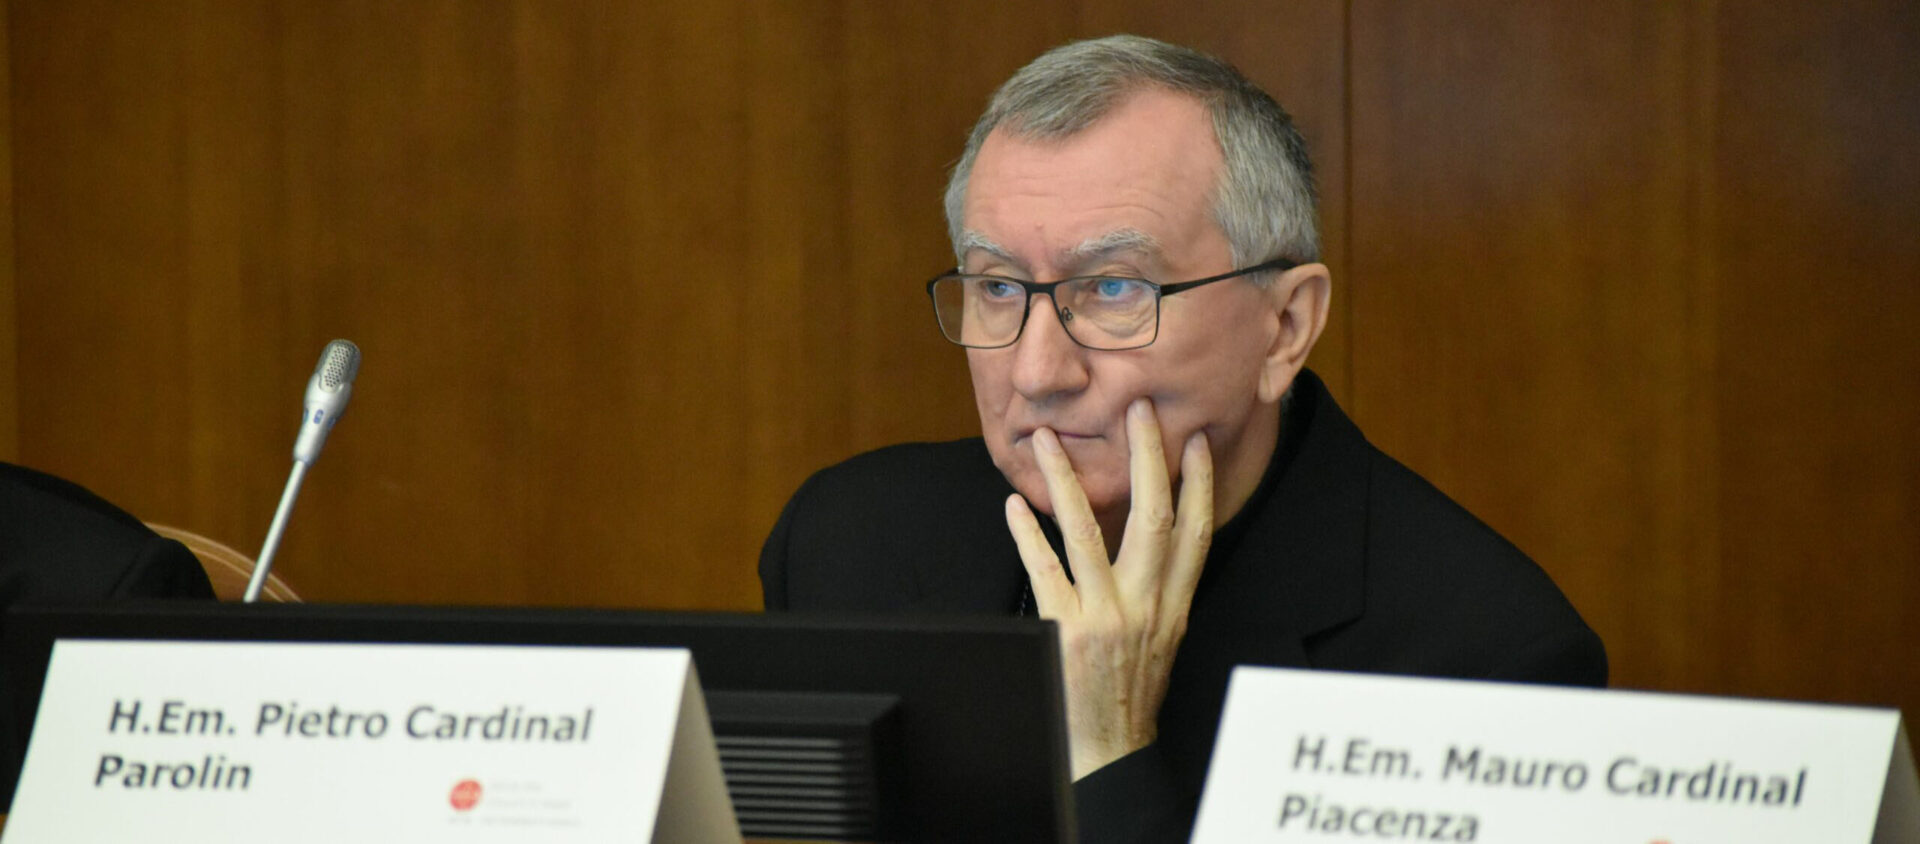 Le Cardinal Pietro Parolin estime que le Rapport McCarrick doit aider à tirer "les leçons des expériences douloureuses du passé" | © Jacques Berset